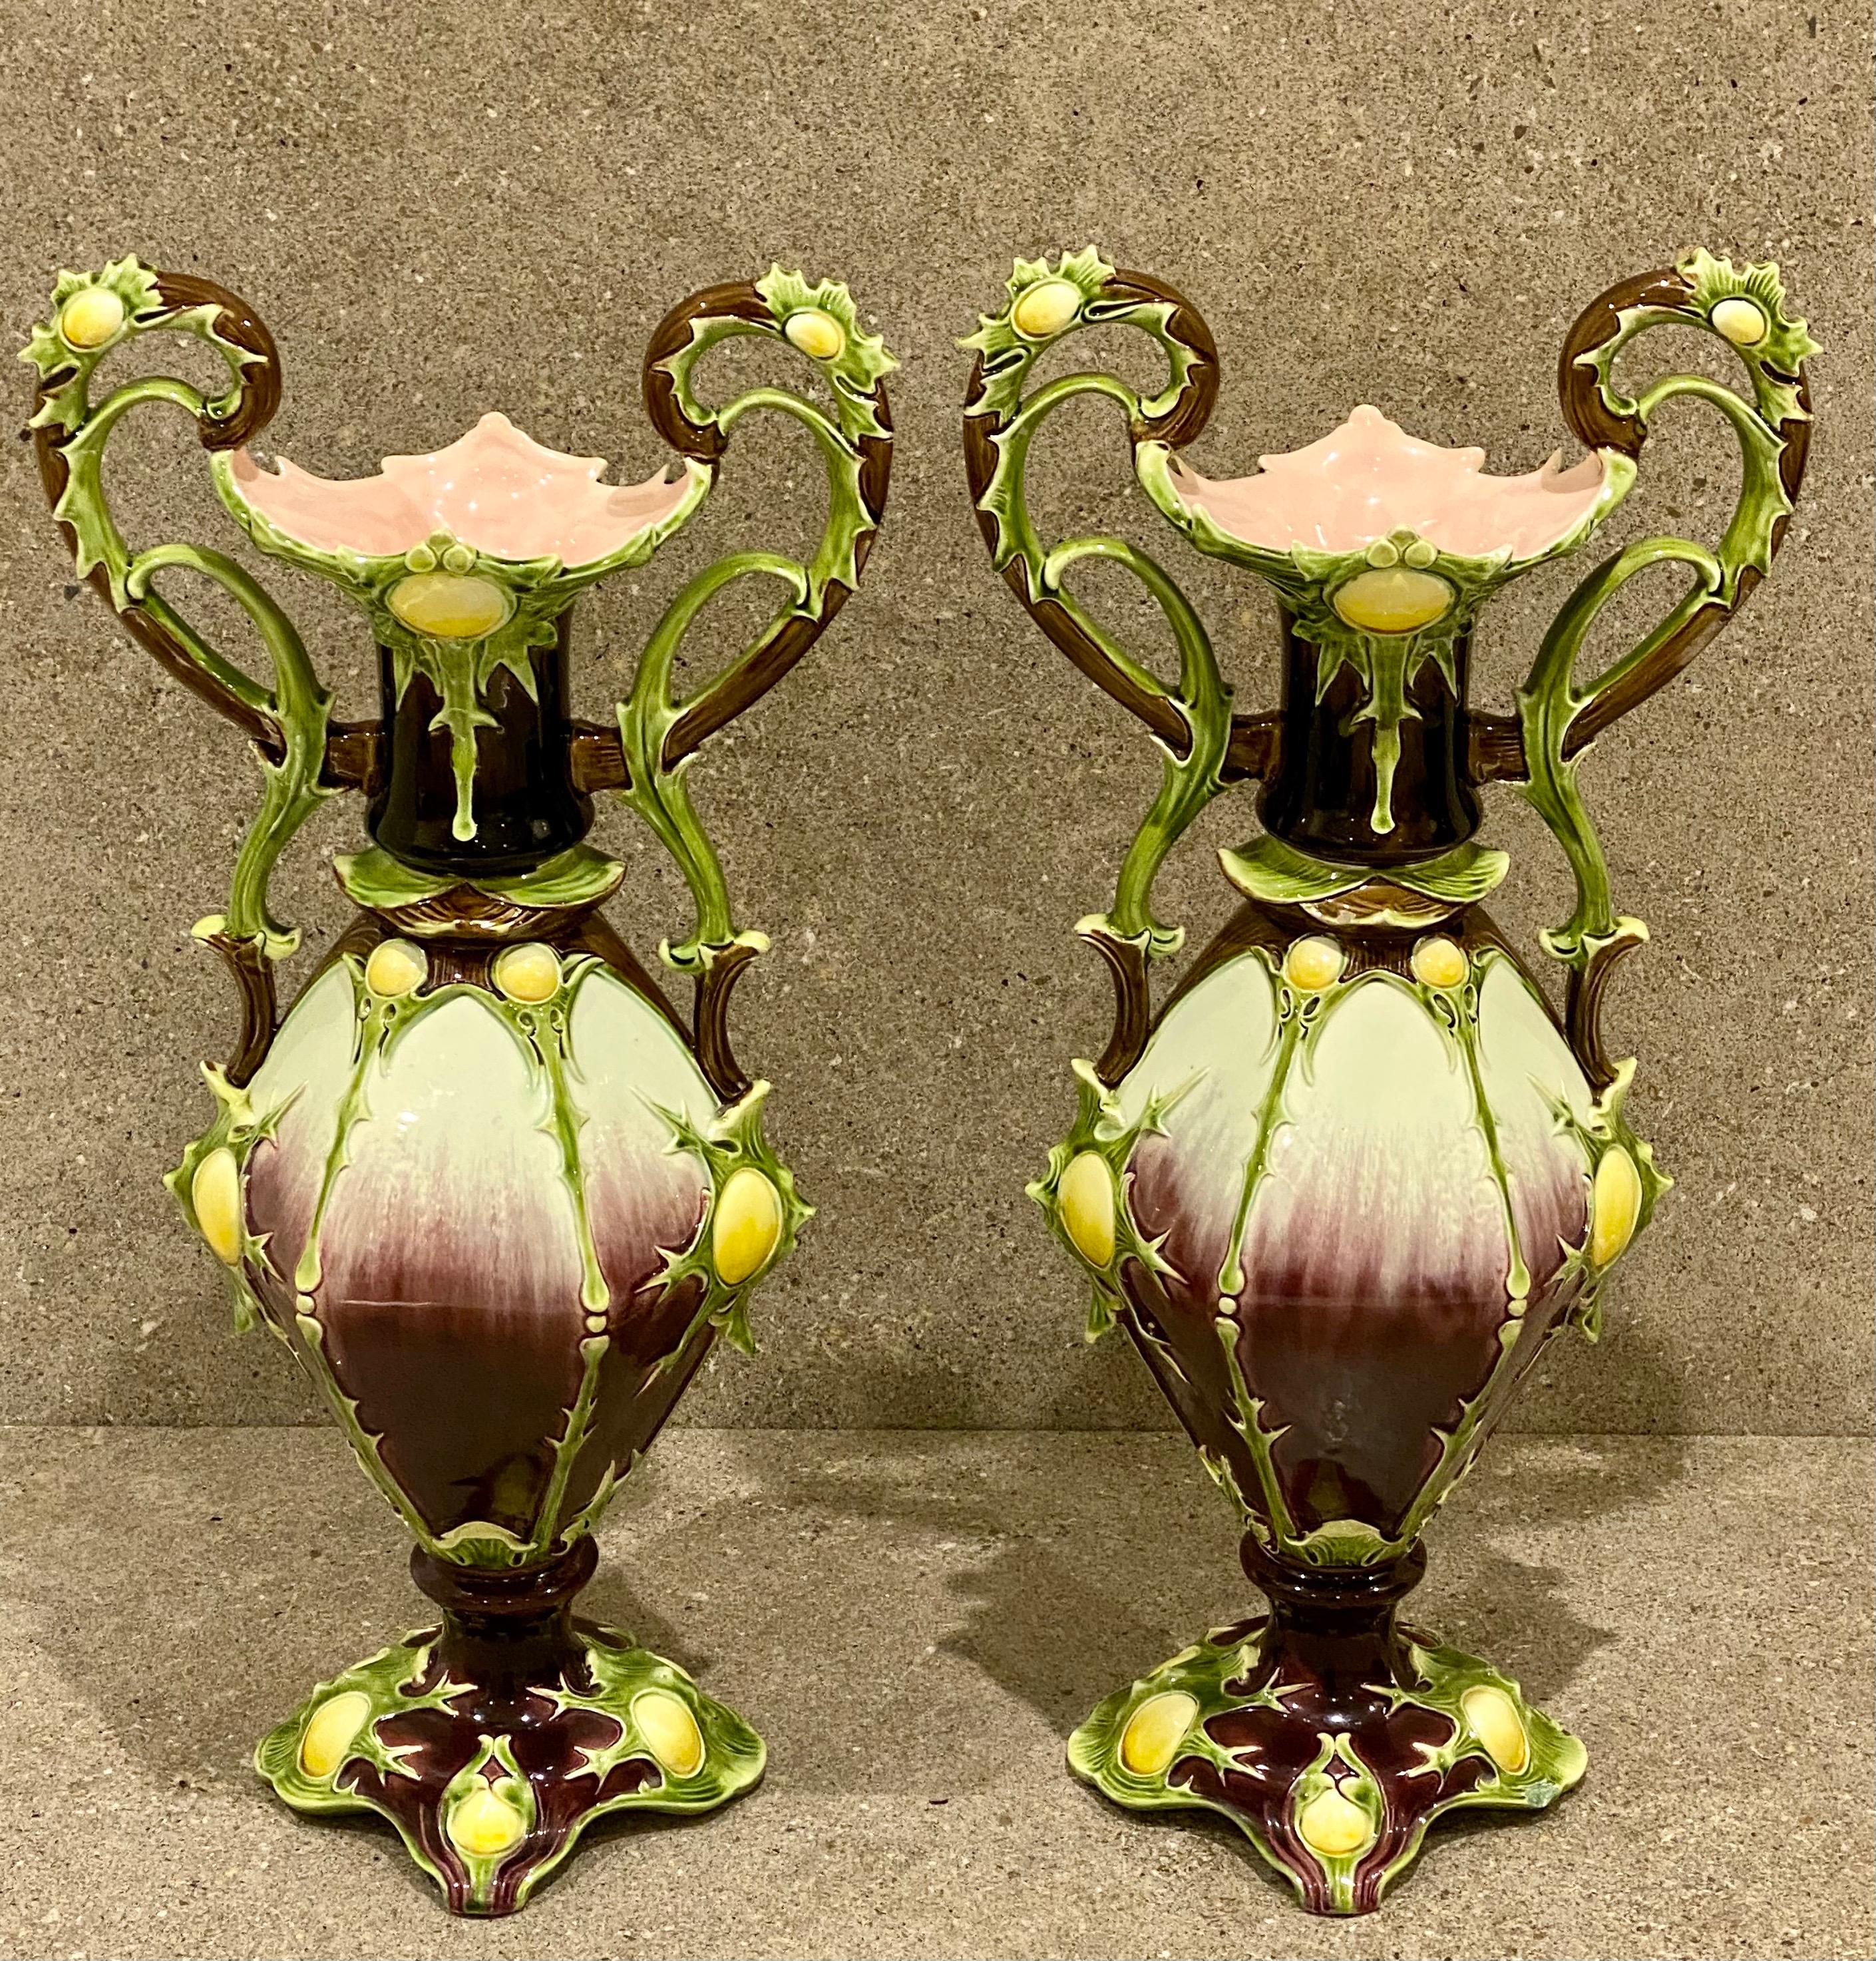 Impressionnante paire de vases en majolique par Julius Dressler, vers 1885. Ces grands vases en forme d'amphore séduisent par leur design inhabituel et leurs couleurs merveilleuses. Mesure : 20